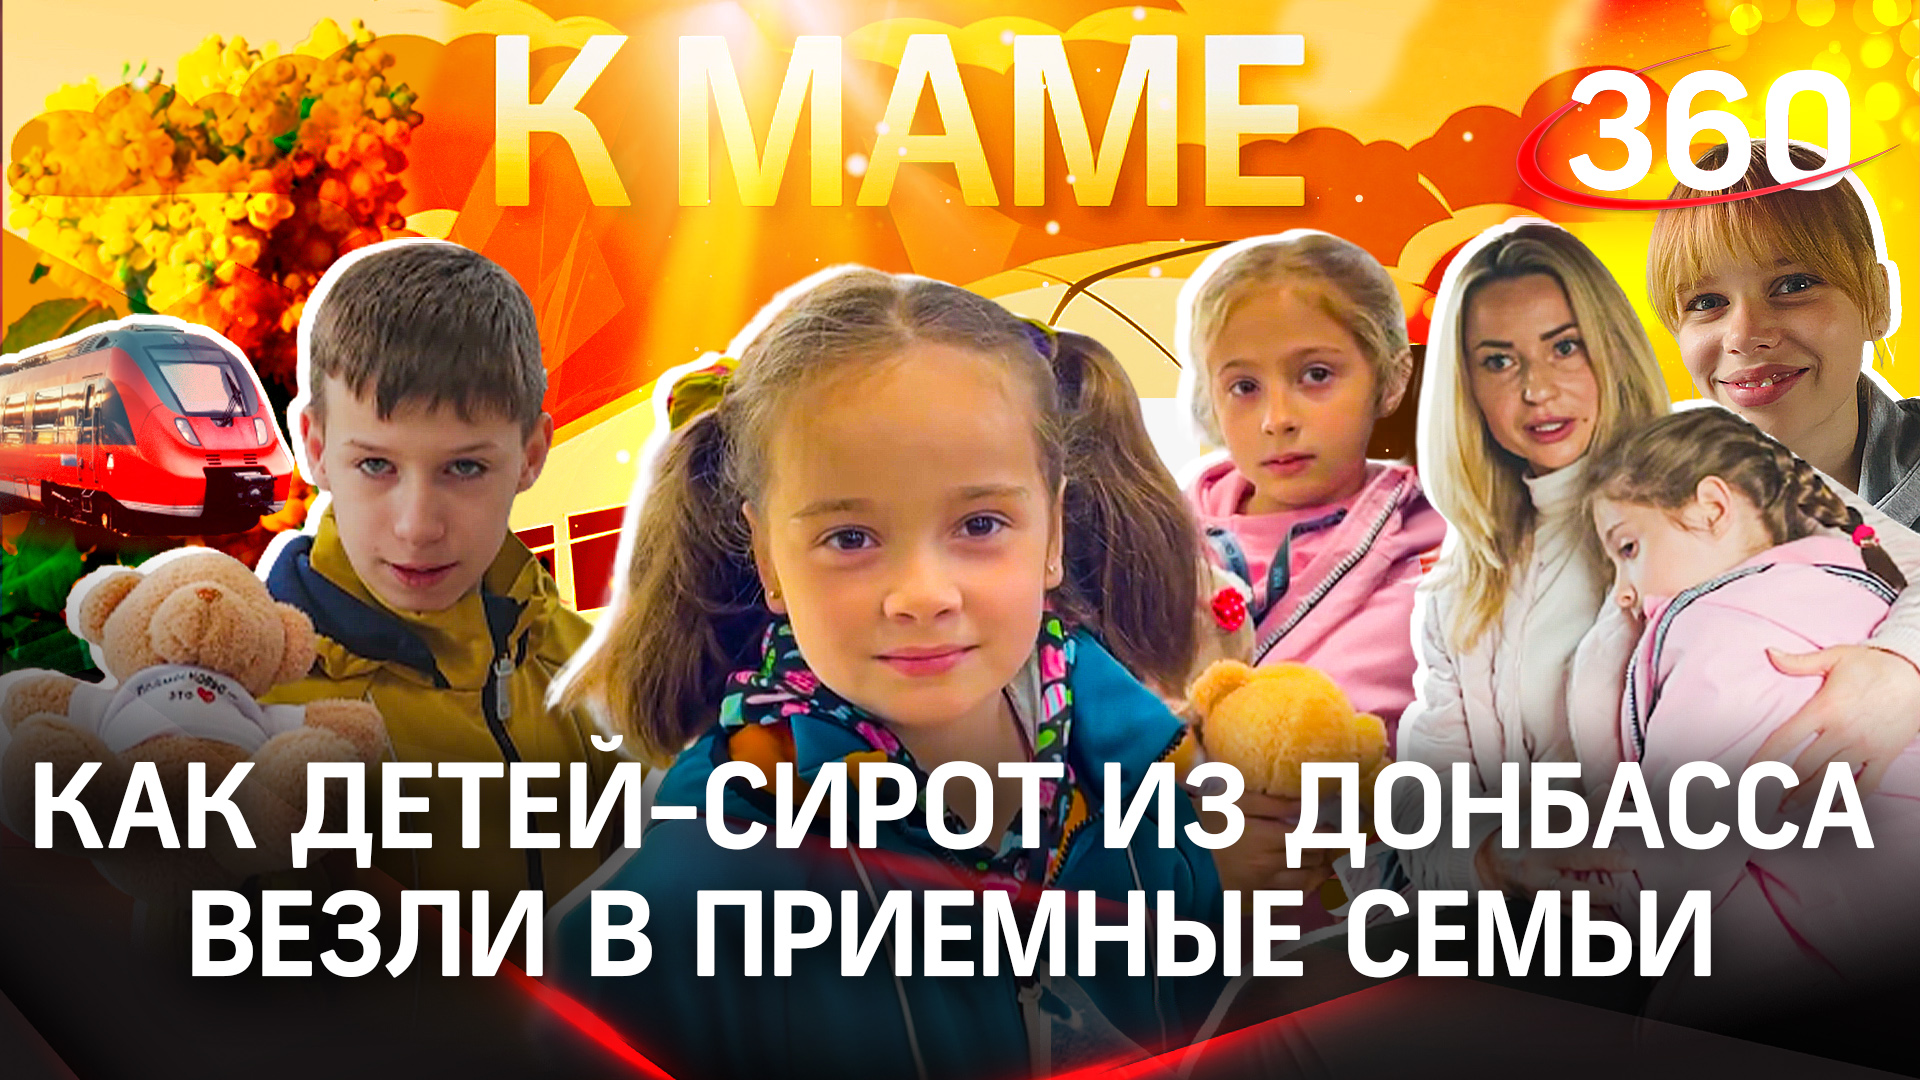 Как детей-сирот из Донбасса везли в приёмные семьи. Специальный репортаж из поезда